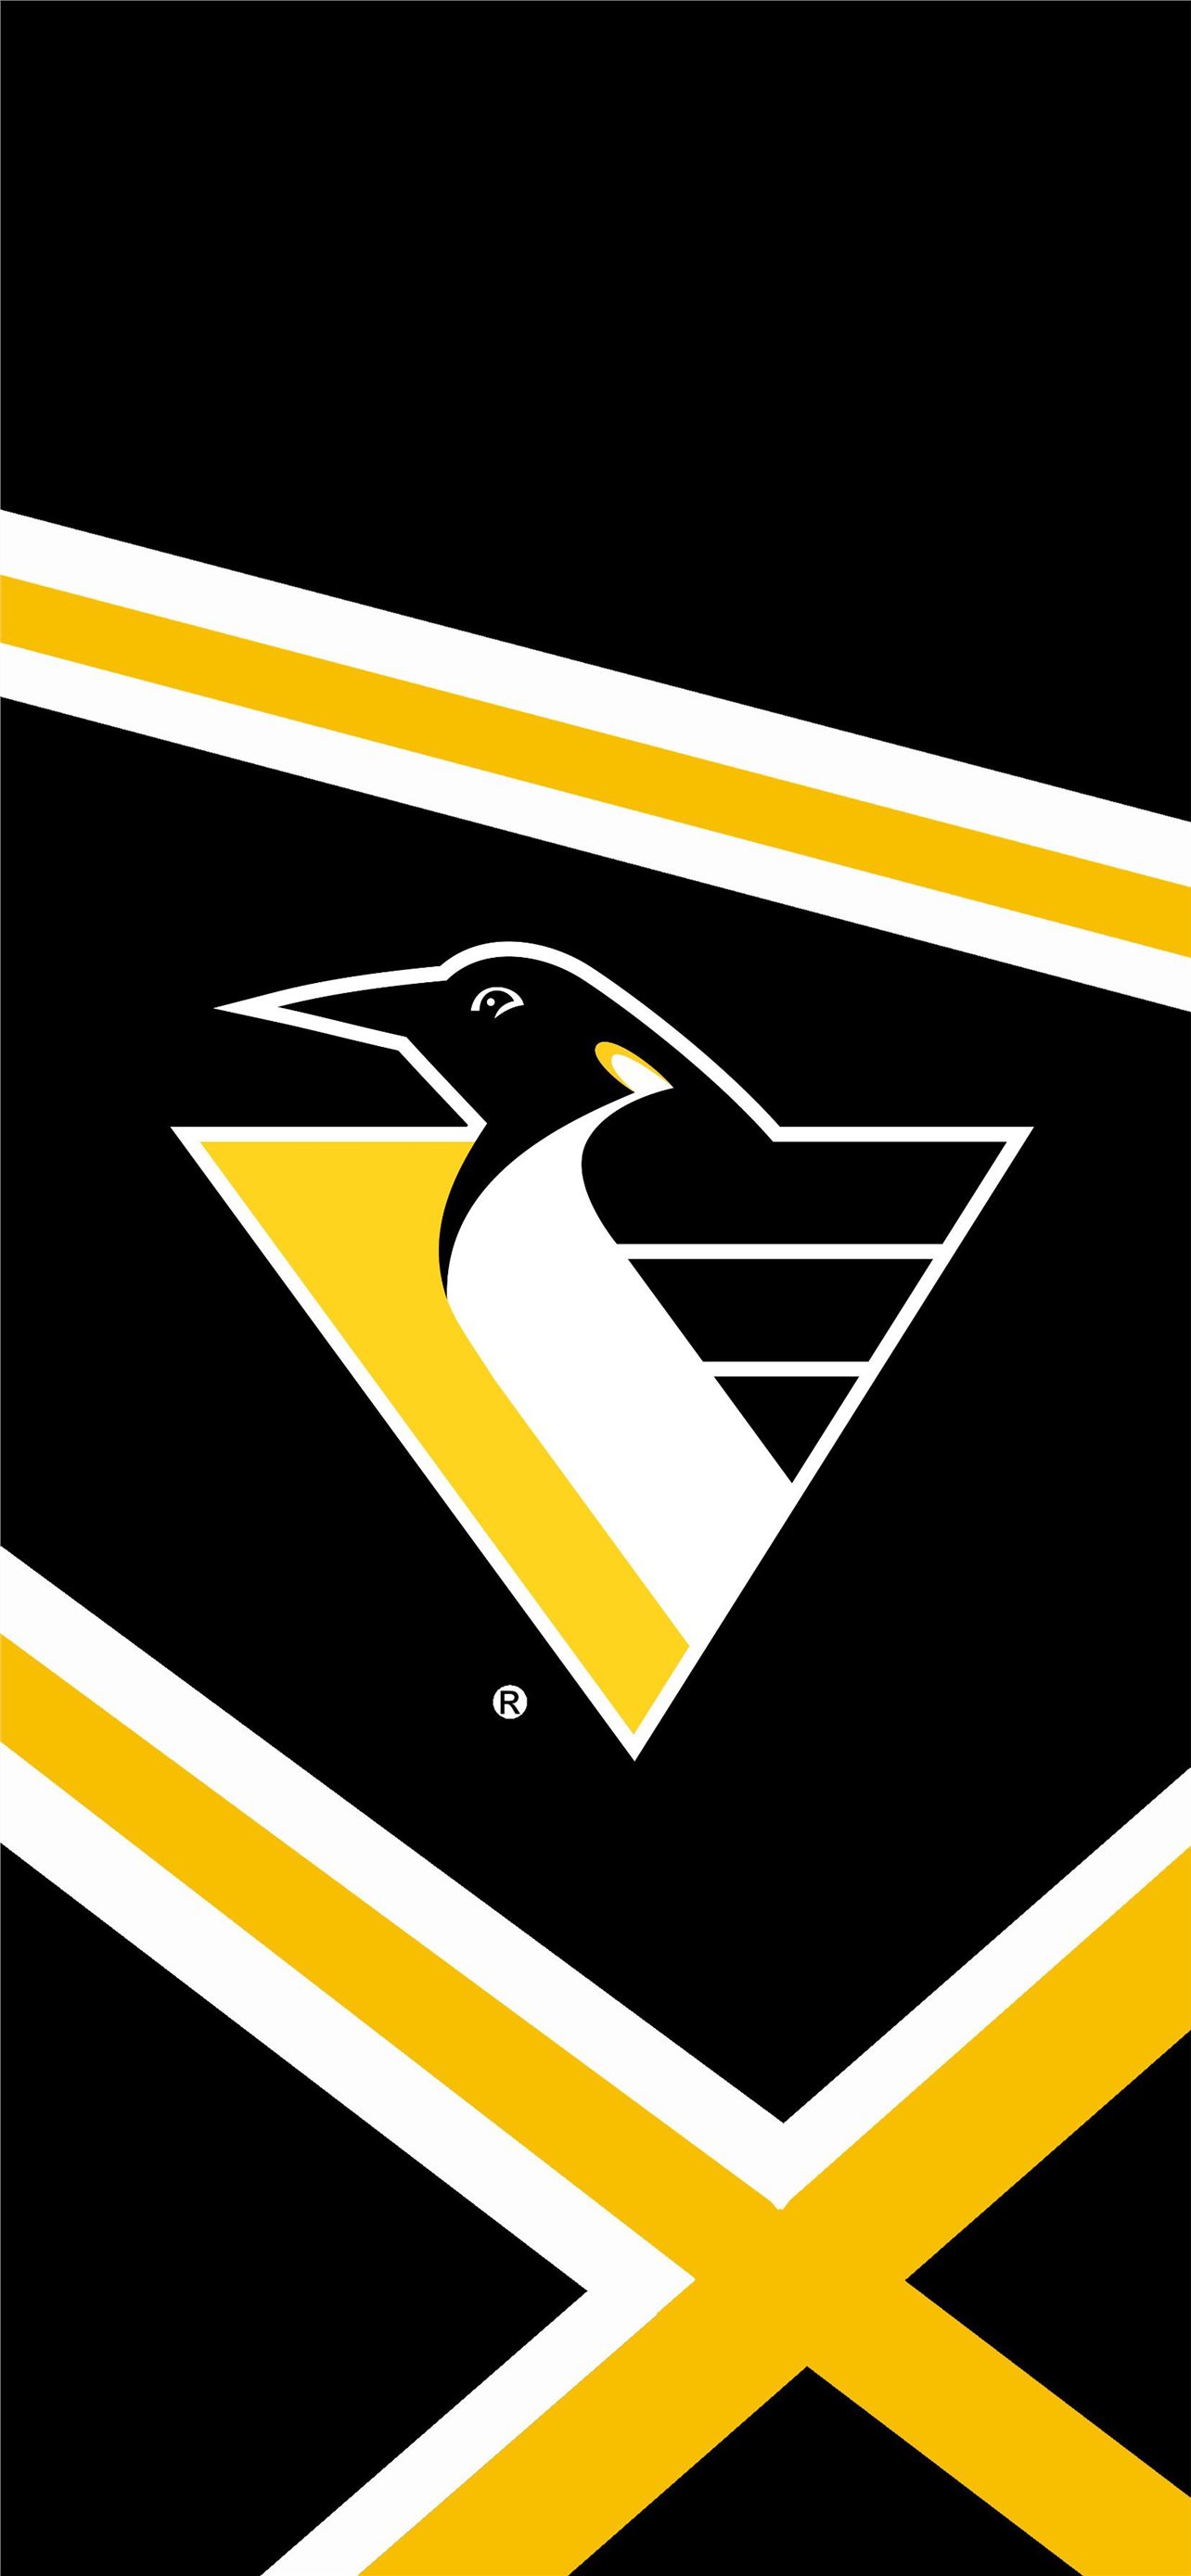 Pittsburgh Penguins wallpaper by jmcgrew on DeviantArt